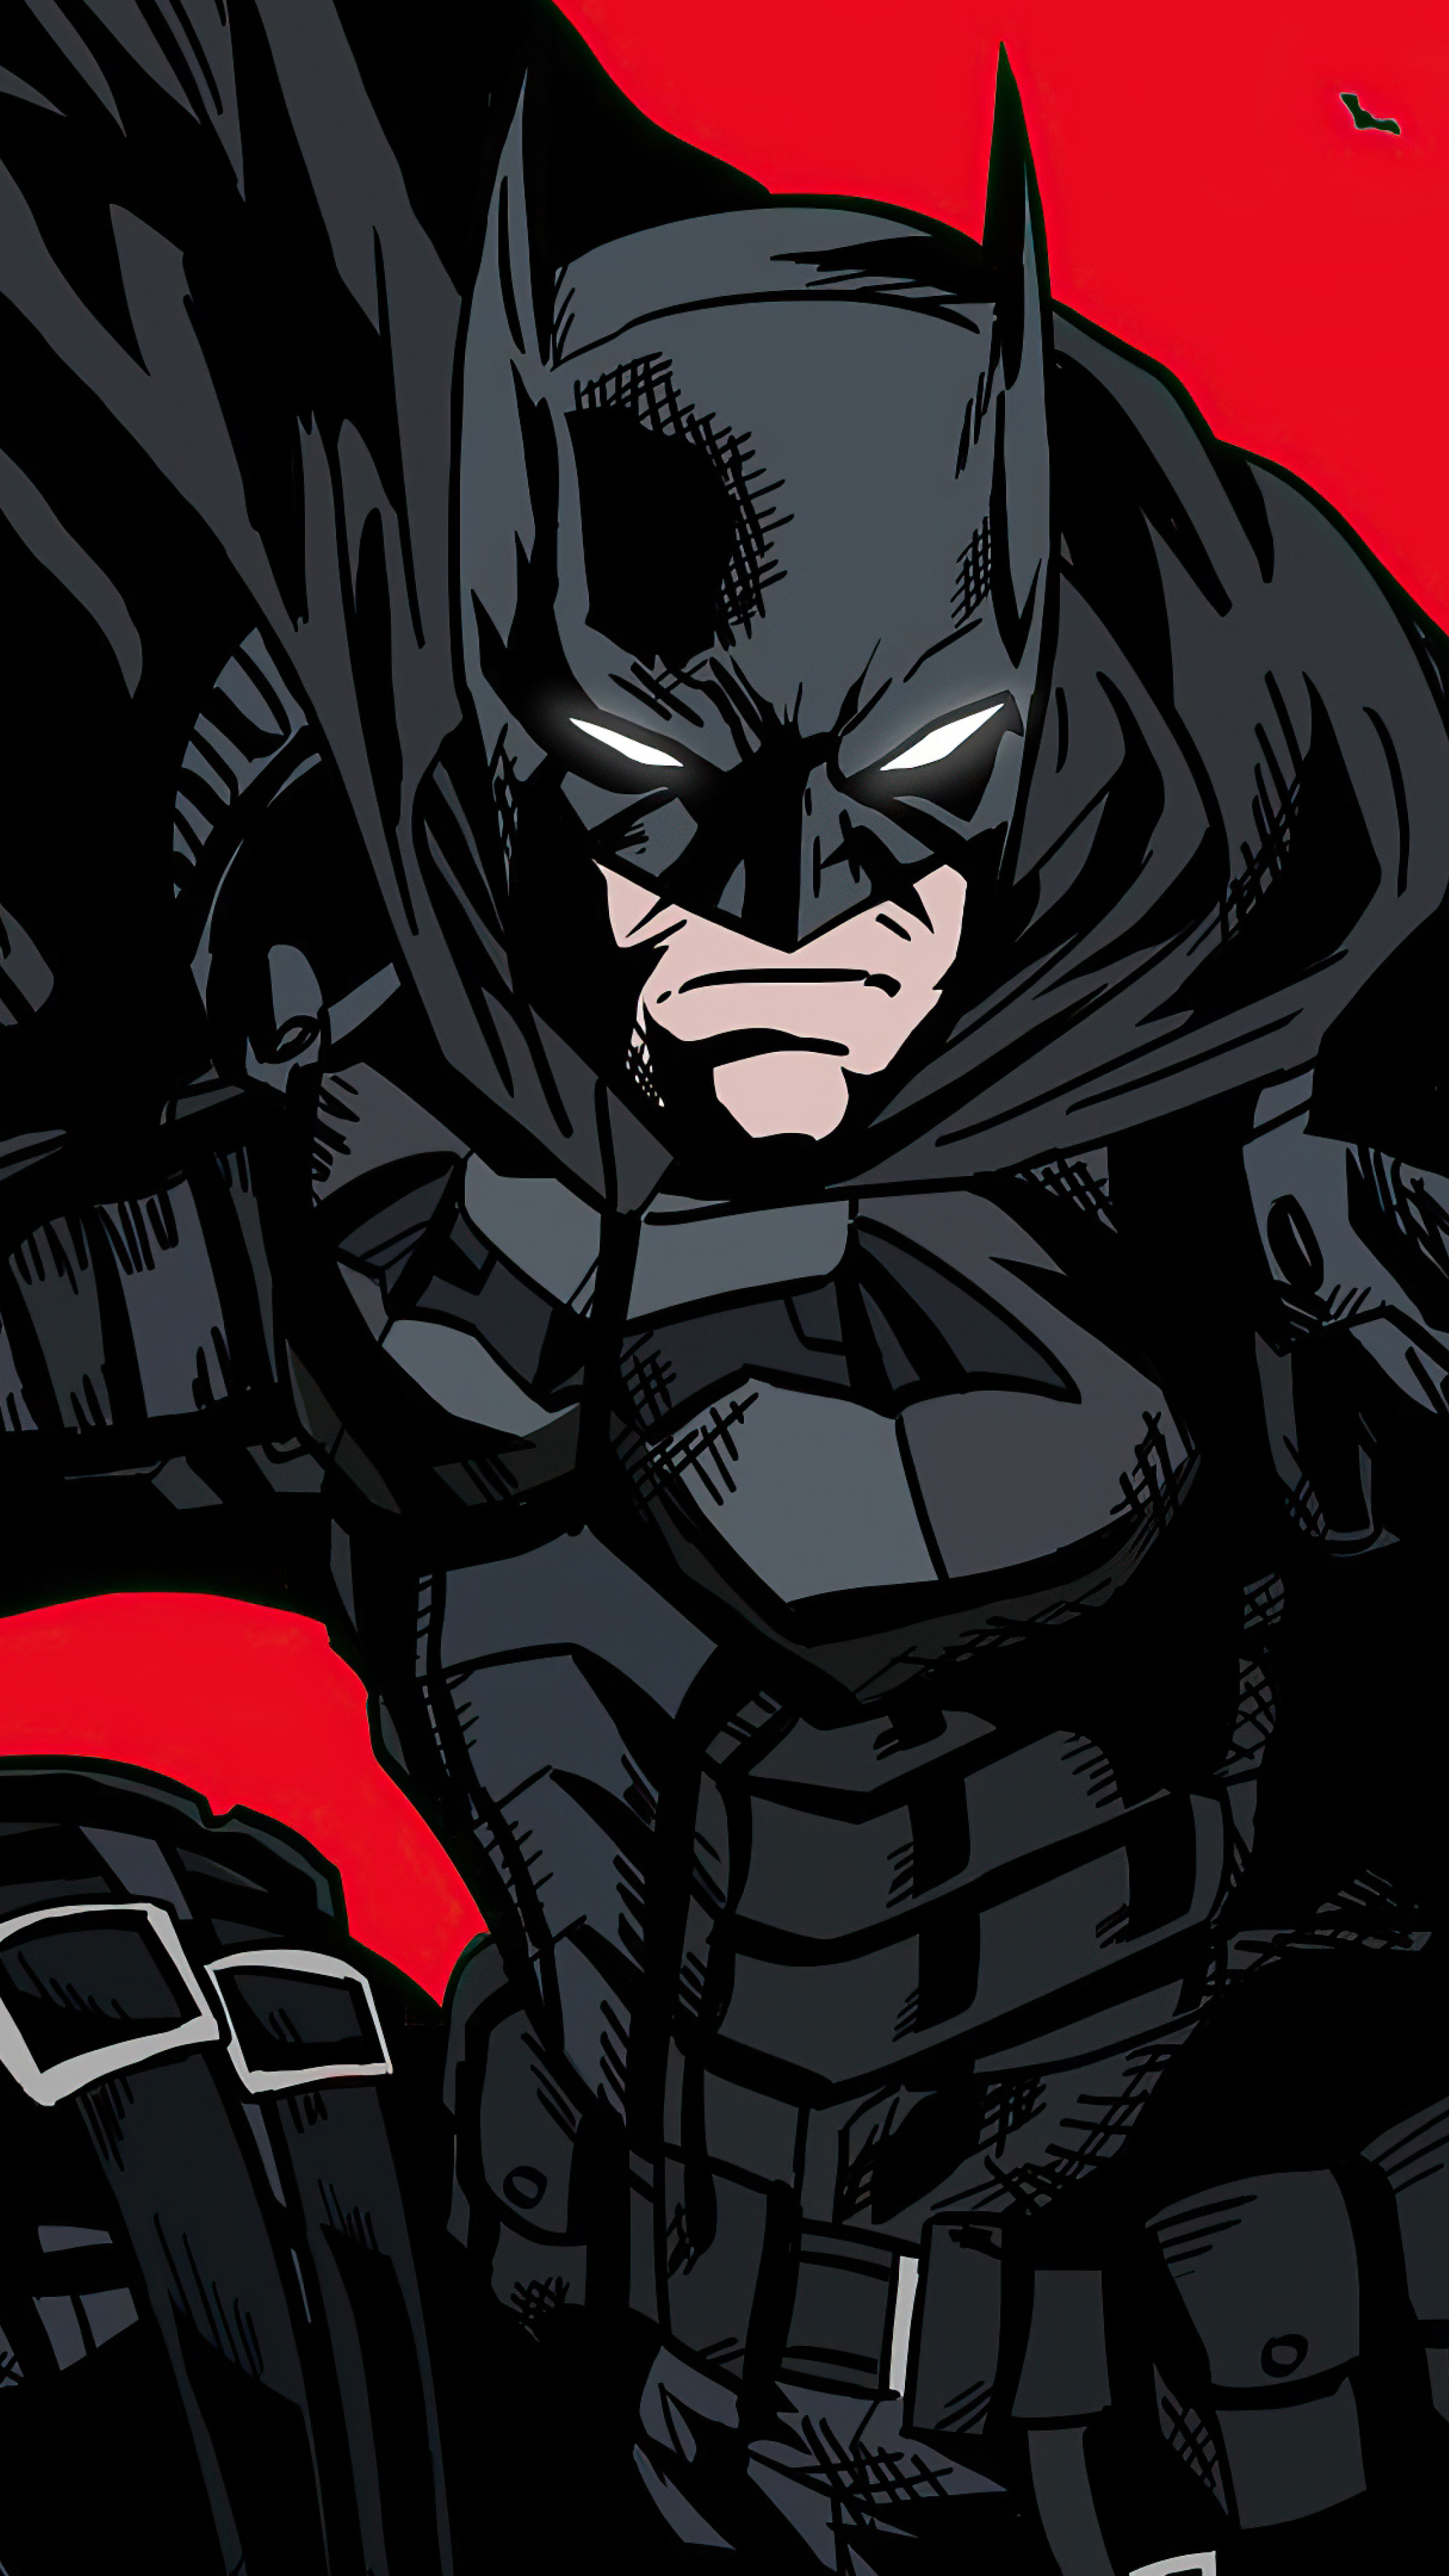 Bạn là người yêu thích siêu anh hùng và là fan của Batman? Hãy cập nhật ngay hình nền Batman siêu ngầu mà chúng tôi giới thiệu! Với những hình ảnh được thiết kế đầy chất huyền bí và quyền lực, hình nền này sẽ khiến bạn không thể rời mắt khỏi điện thoại thông minh của mình!